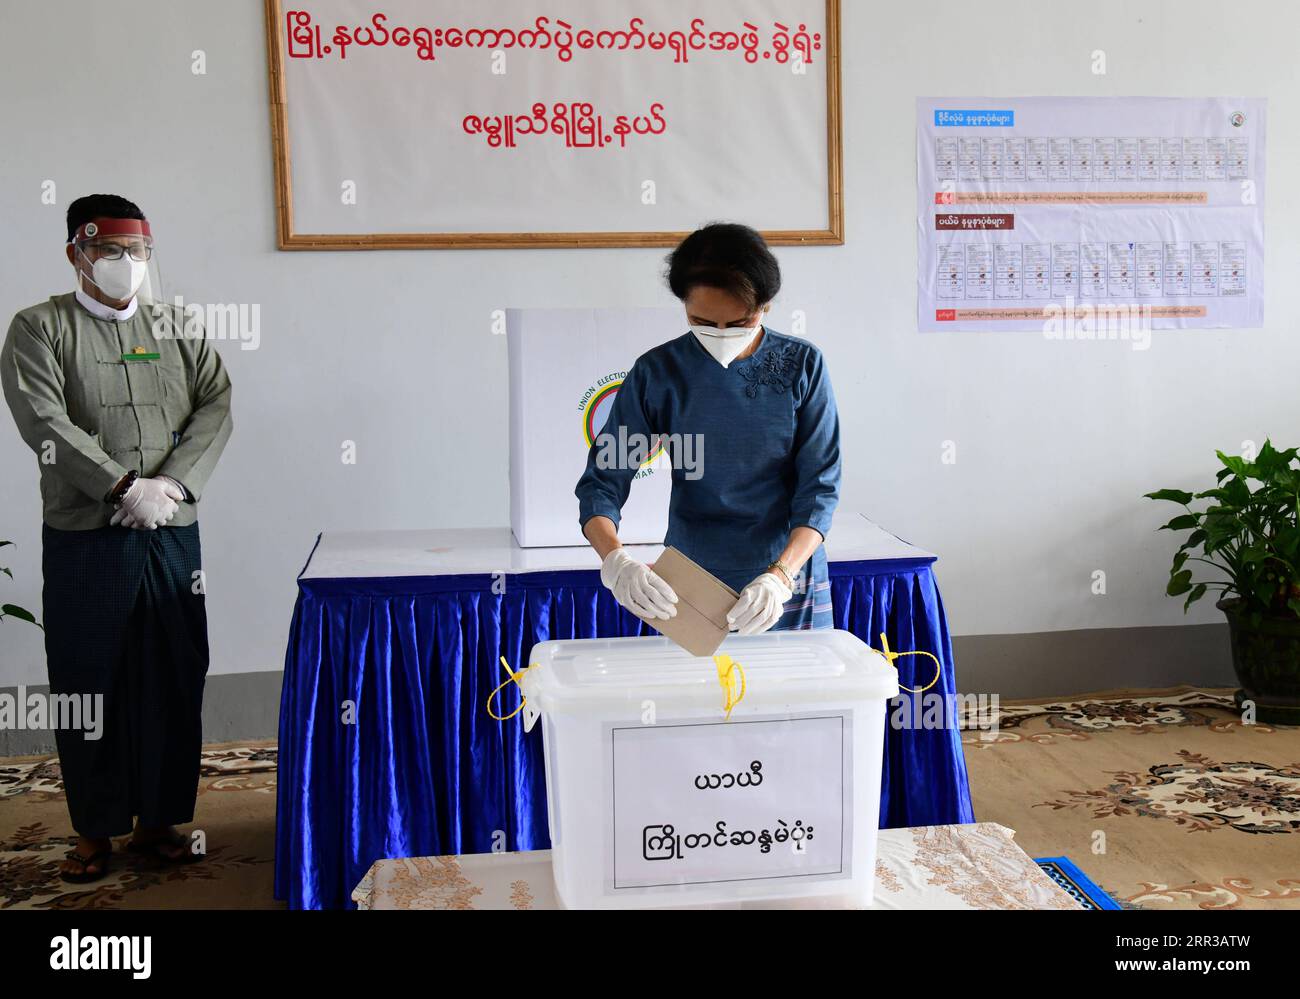 Actualités Bilder des Tages 201029 -- YANGON, 29 octobre 2020 -- la conseillère d'État du Myanmar, Aung San Suu Kyi, vote par anticipation pour les élections générales à Nay Pyi Taw, Myanmar, le 29 octobre 2020. Le président du Myanmar U Win Myint et la conseillère d’État Aung San Suu Kyi ont voté par anticipation jeudi pour les élections générales prévues pour le 8 novembre. /Document via Xinhua MYANMAR-ADVANCE VOTING-GENERAL ELECTIONS Ministryxofxinformation PUBLICATIONxNOTxINxCHN Banque D'Images